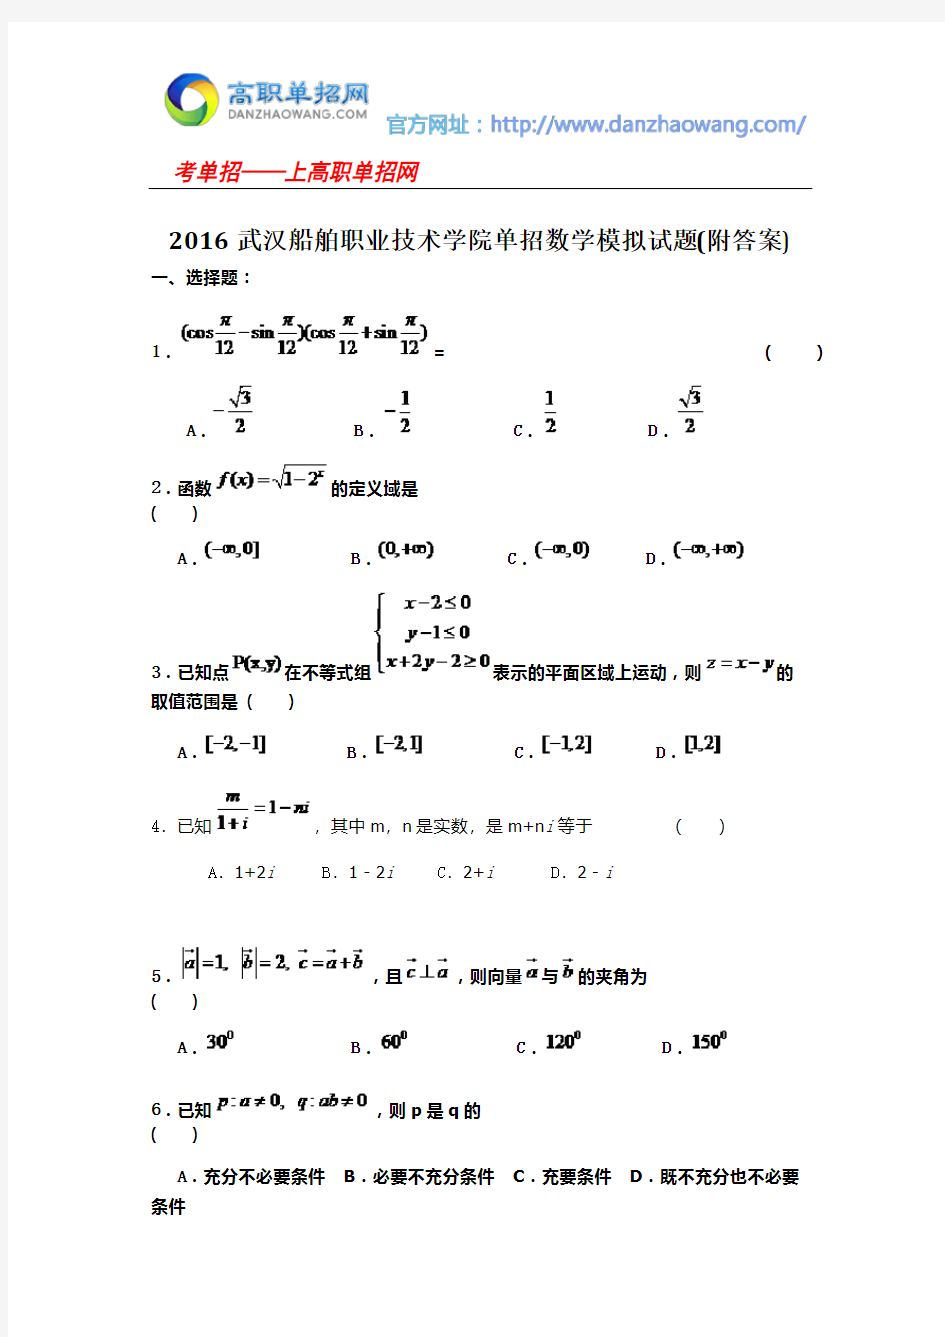 2016武汉船舶职业技术学院单招数学模拟试题(附答案)